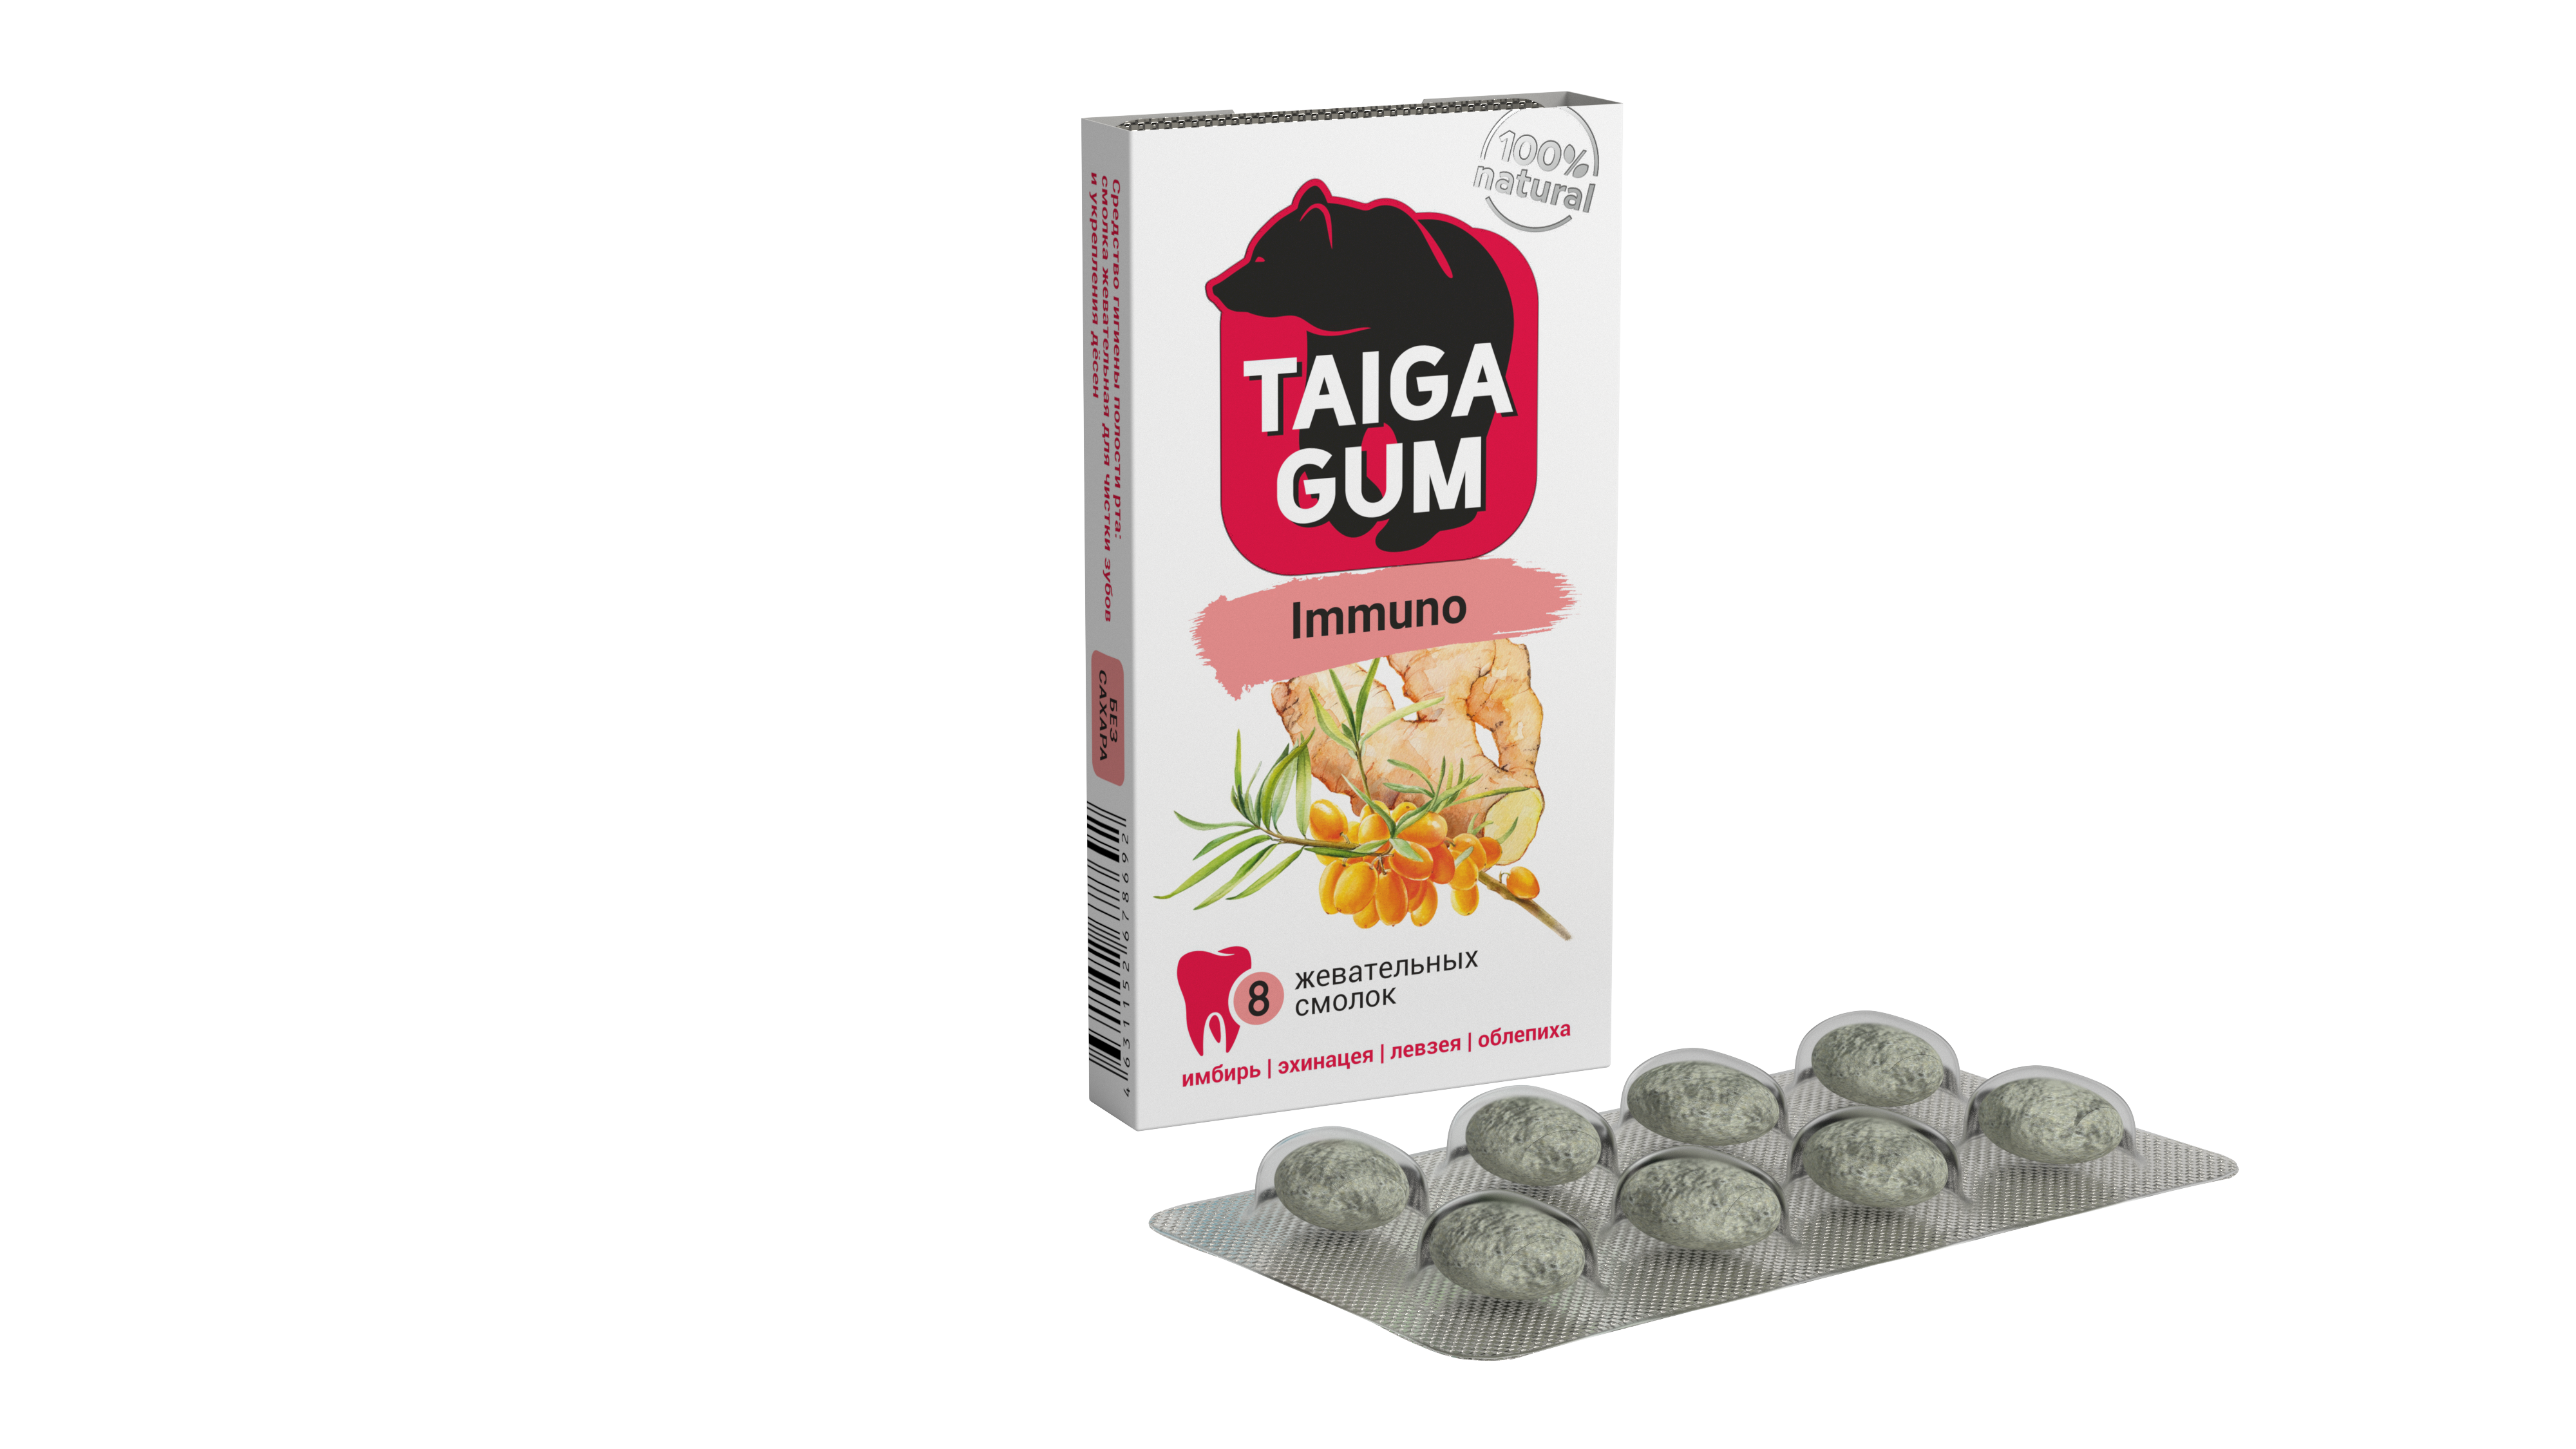 Taiga gum смолка жевательная с пчелиным воском immuno имбирь/эхинацея/левзея/облепиха драже без сахара N 8